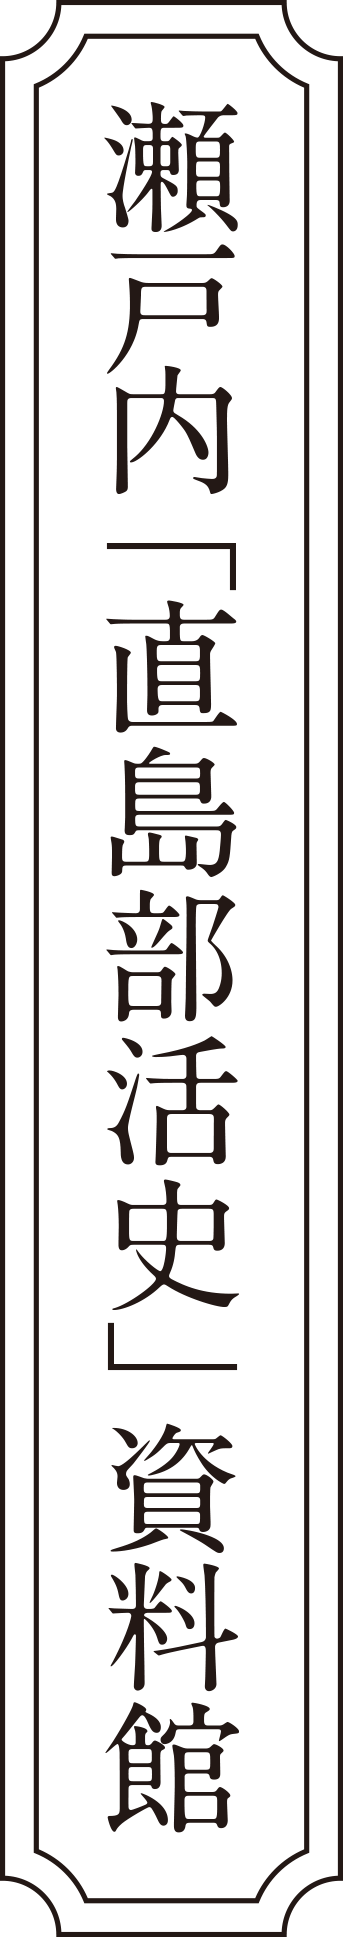 瀬戸内「直島部活史」資料館ロゴ